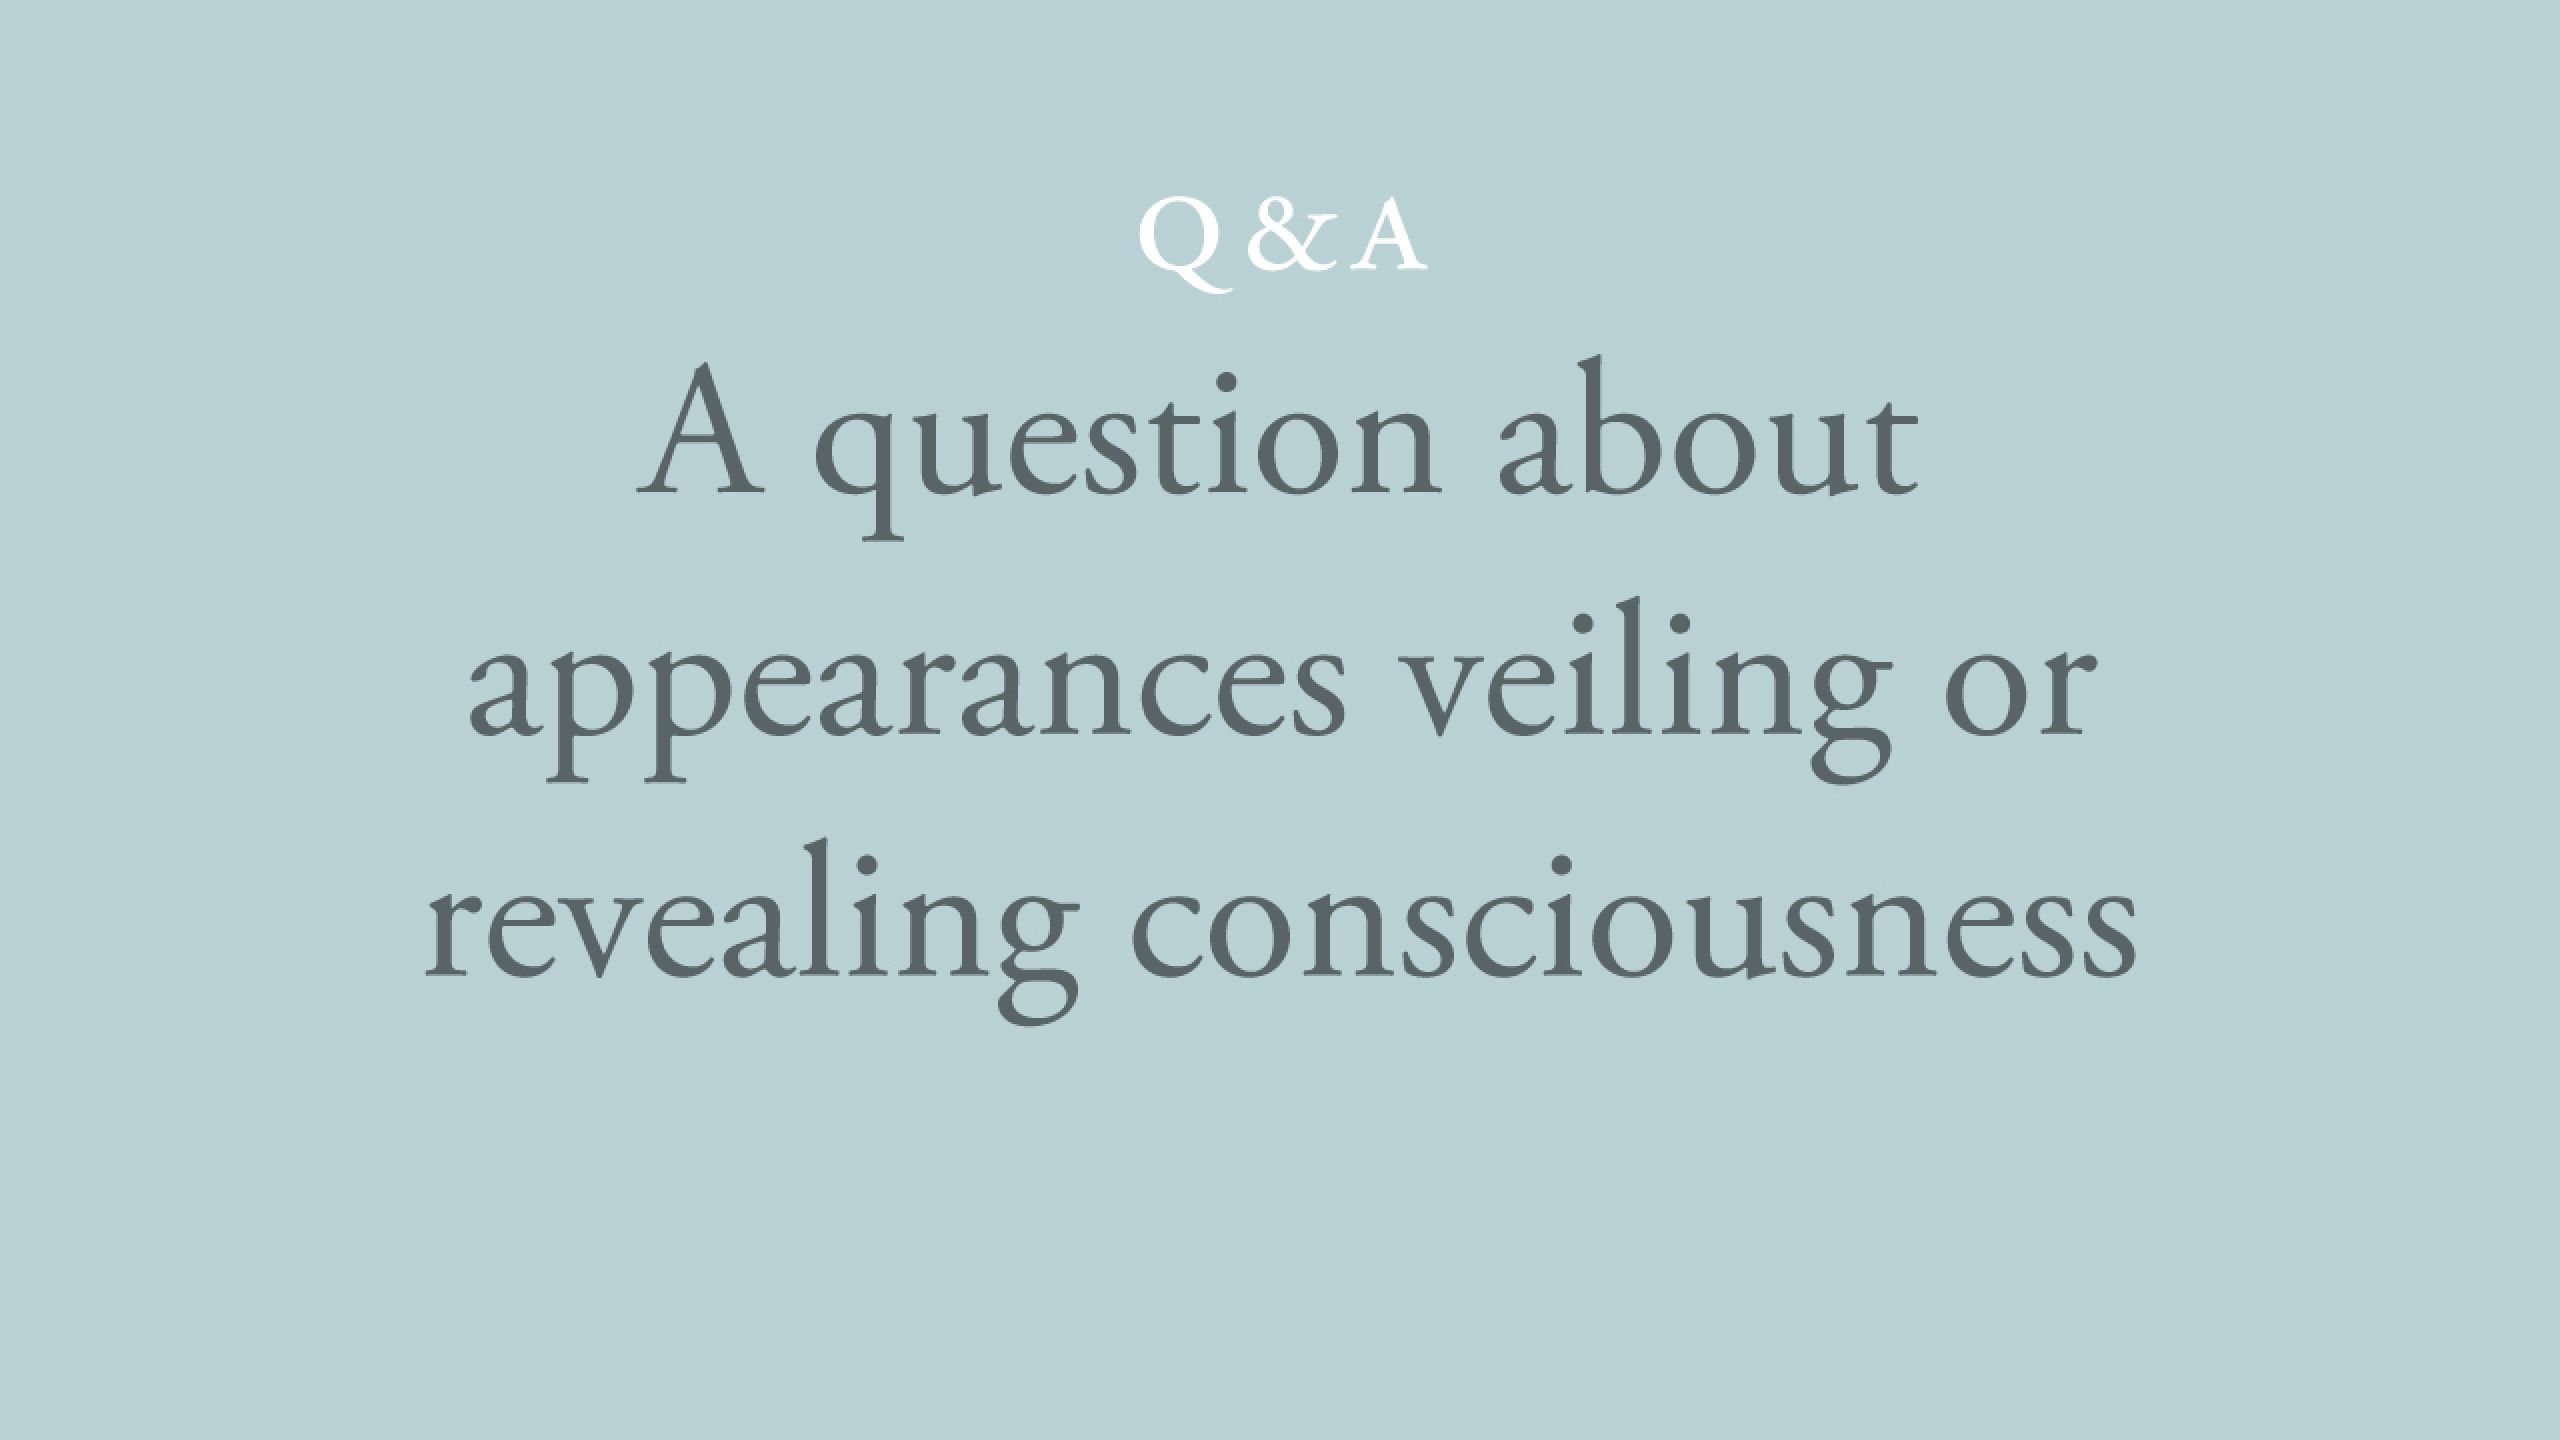 Do appearances veil or reveal consciousness?